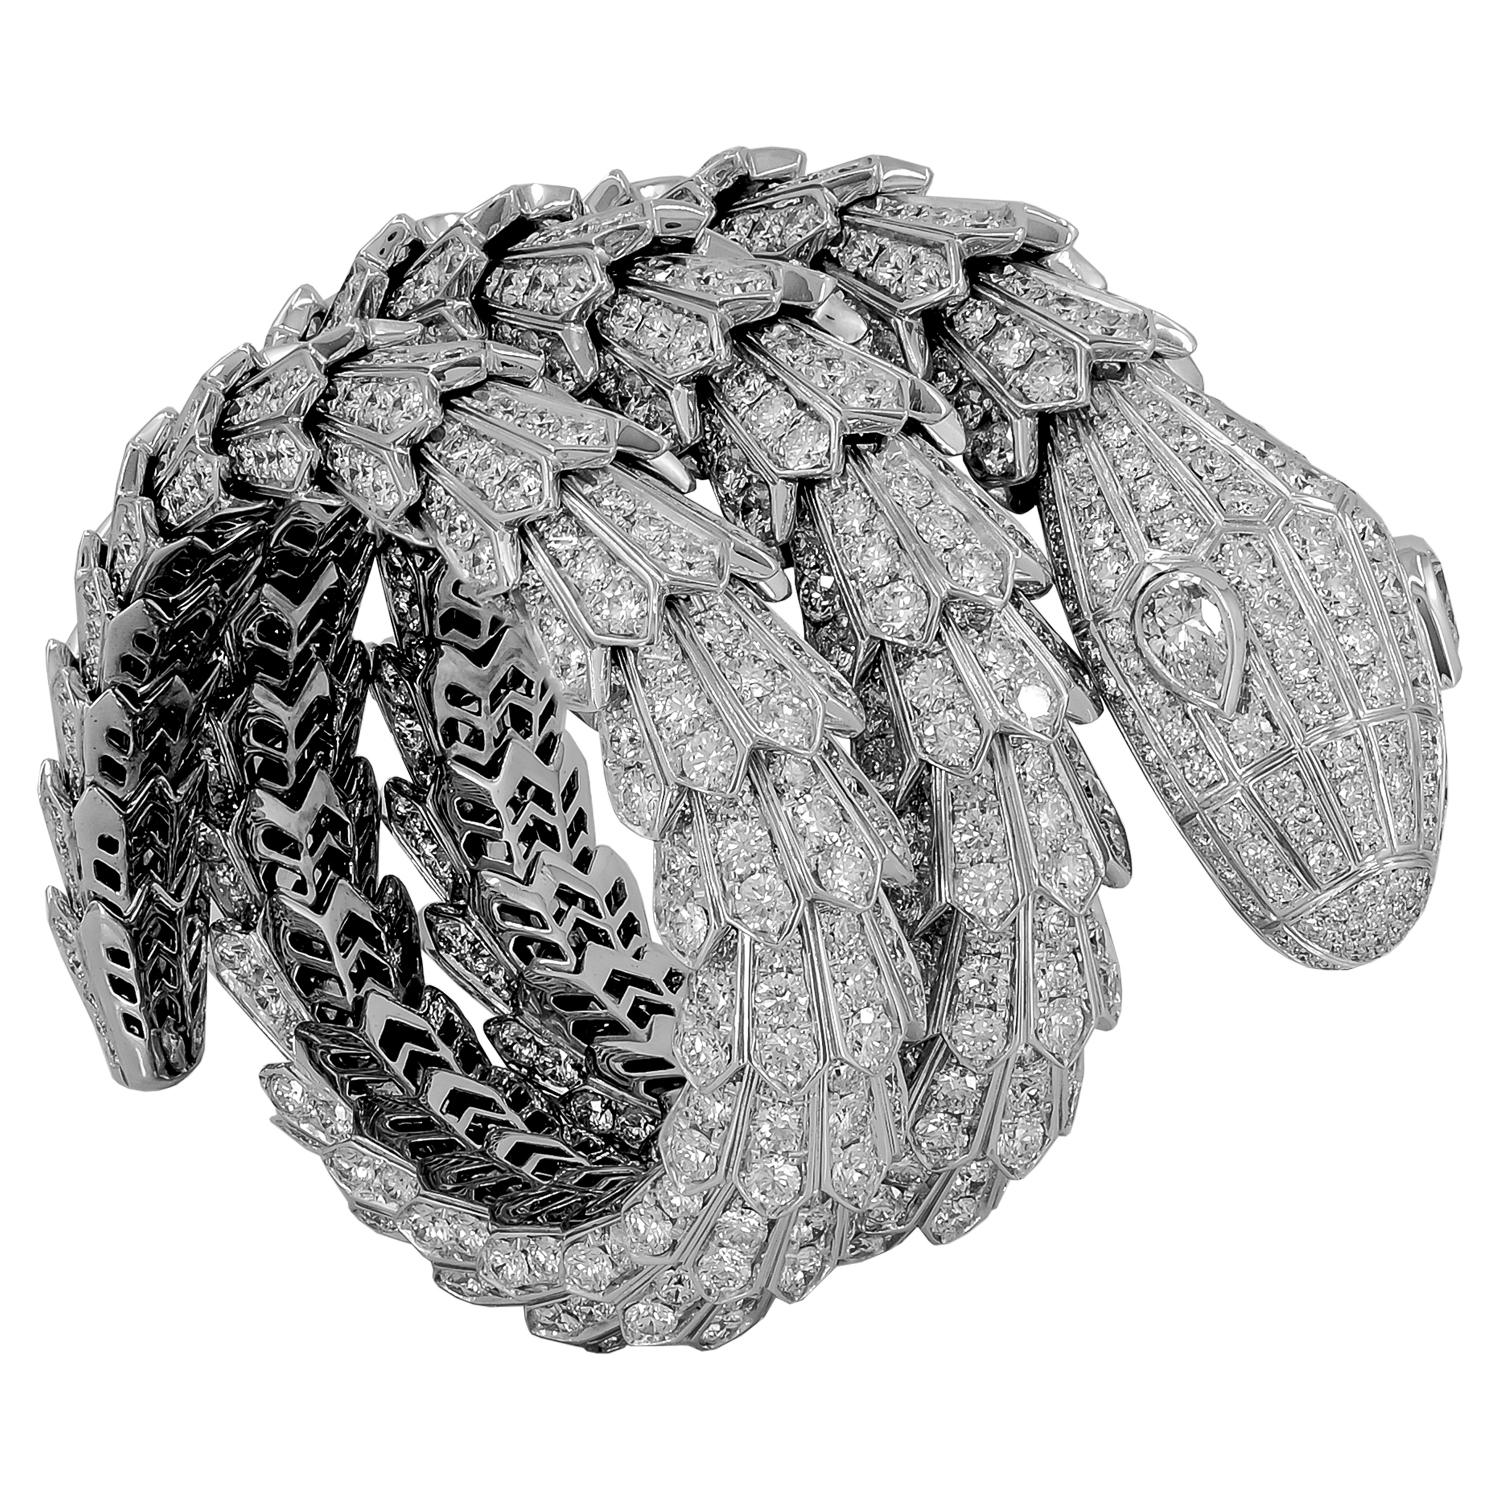 Un magnifique bracelet Serpenti en or blanc 18 carats qui capture le pouvoir et l'essence de la séduction à travers le serpent iconique de Bulgari, qui s'enroule sensuellement autour du poignet en exposant ses écailles de diamants ronds taille